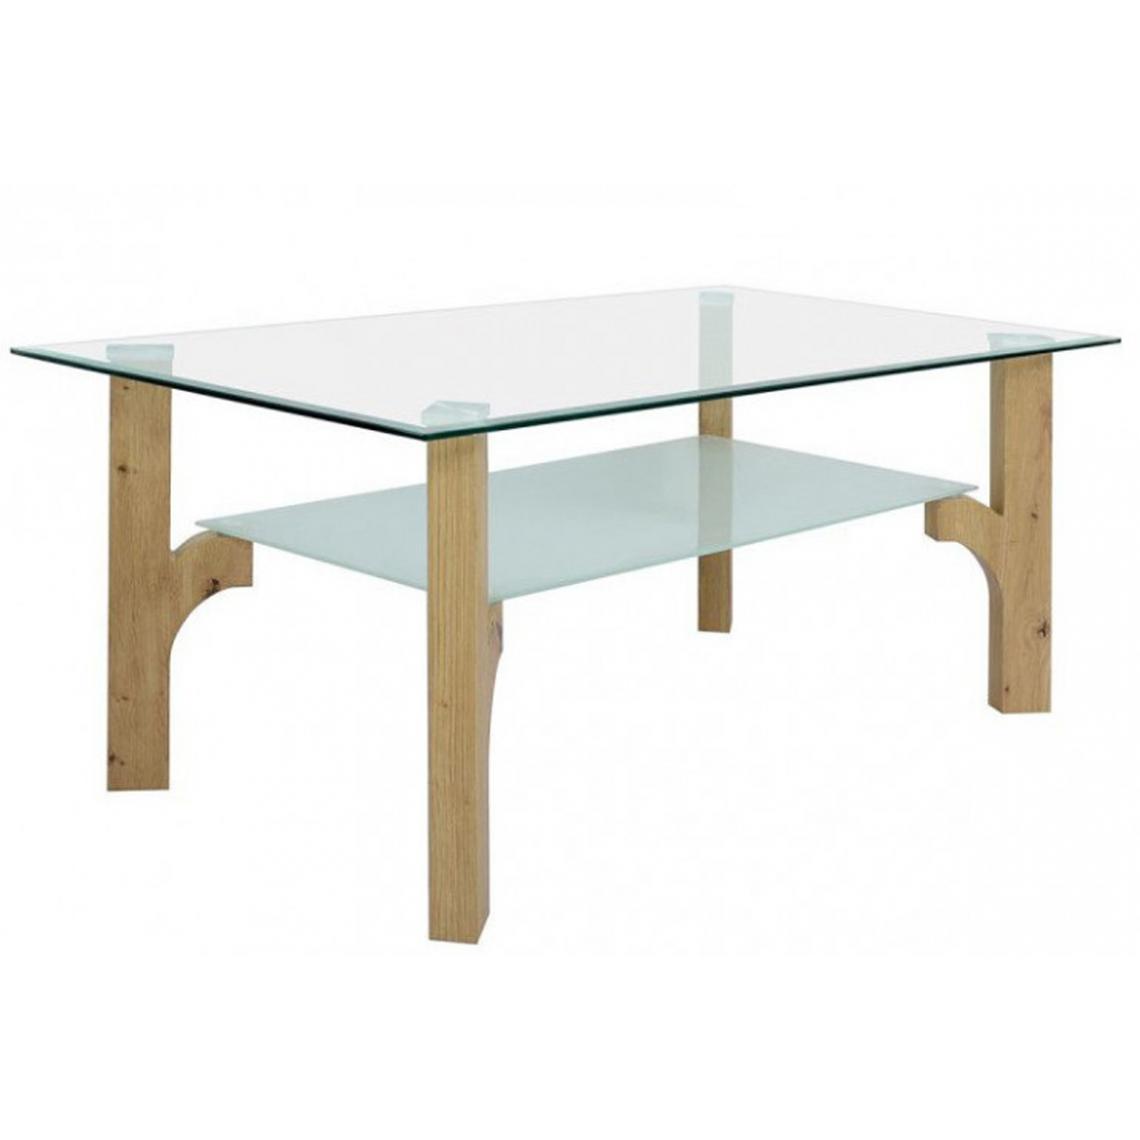 Pegane - Table basse rectangulaire en verre et chêne clair - L 110 x H 45 x P 60 cm -PEGANE- - Tables basses